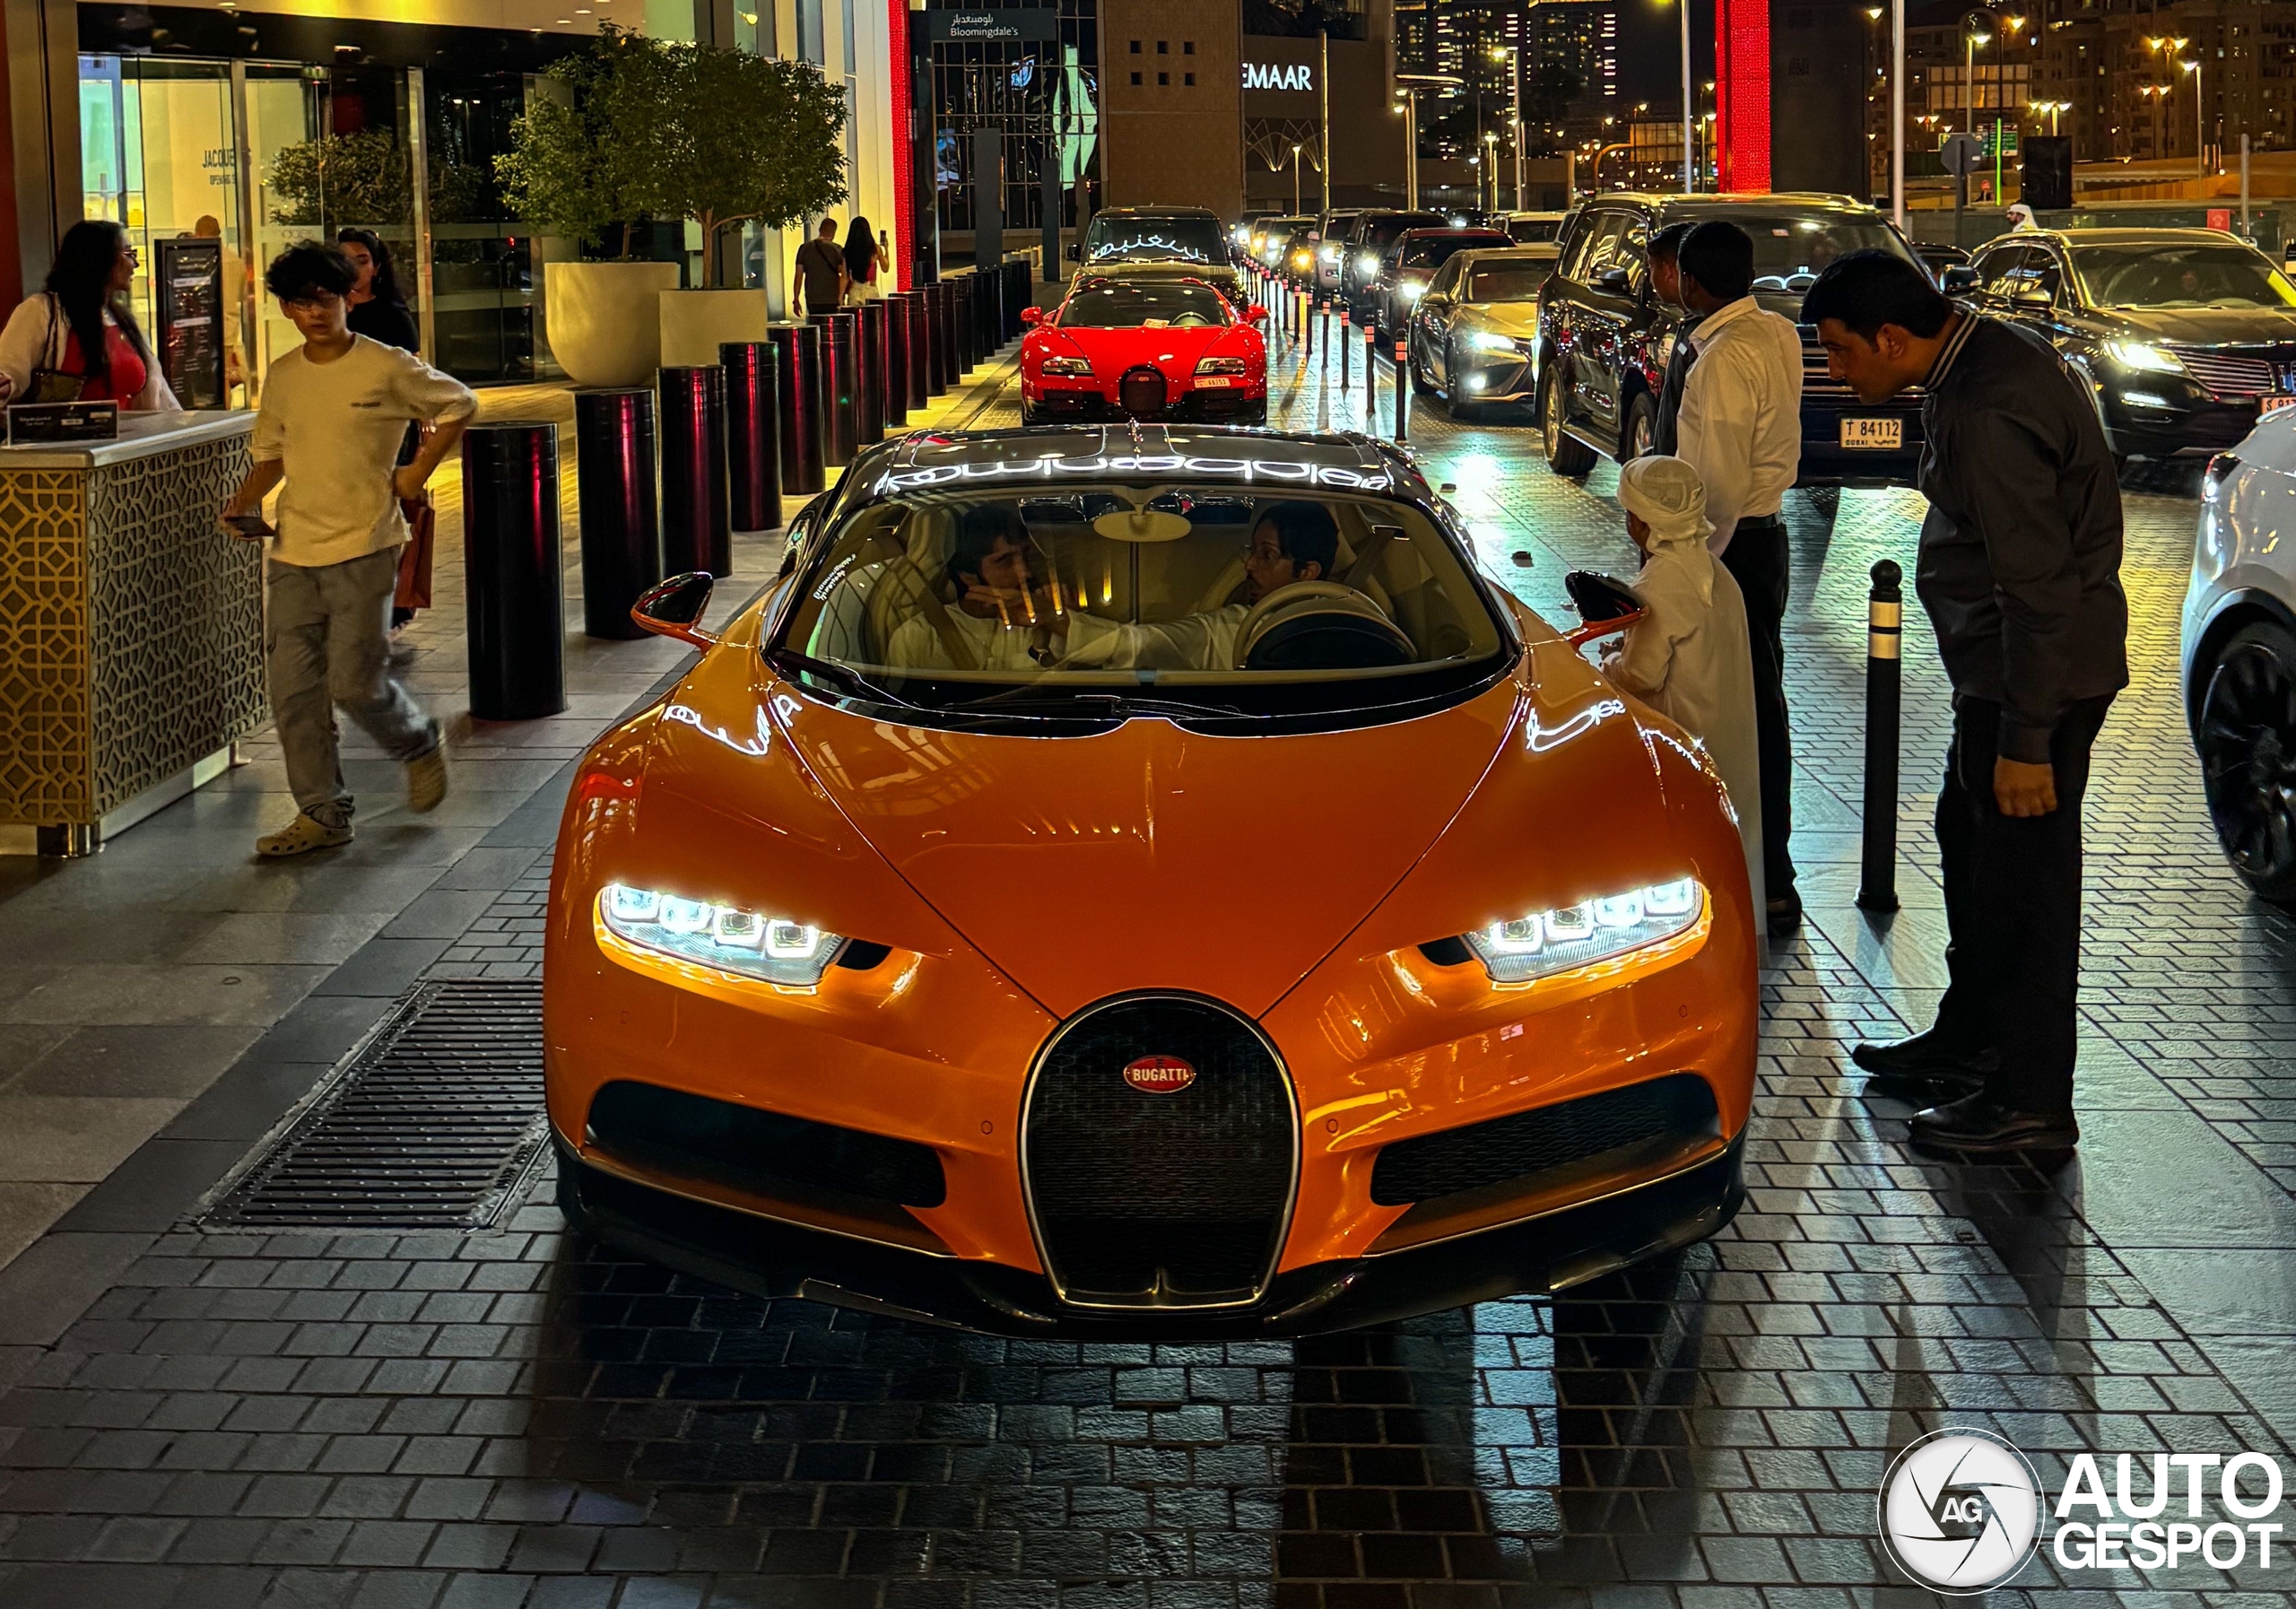 Another Bugatti in Dubai